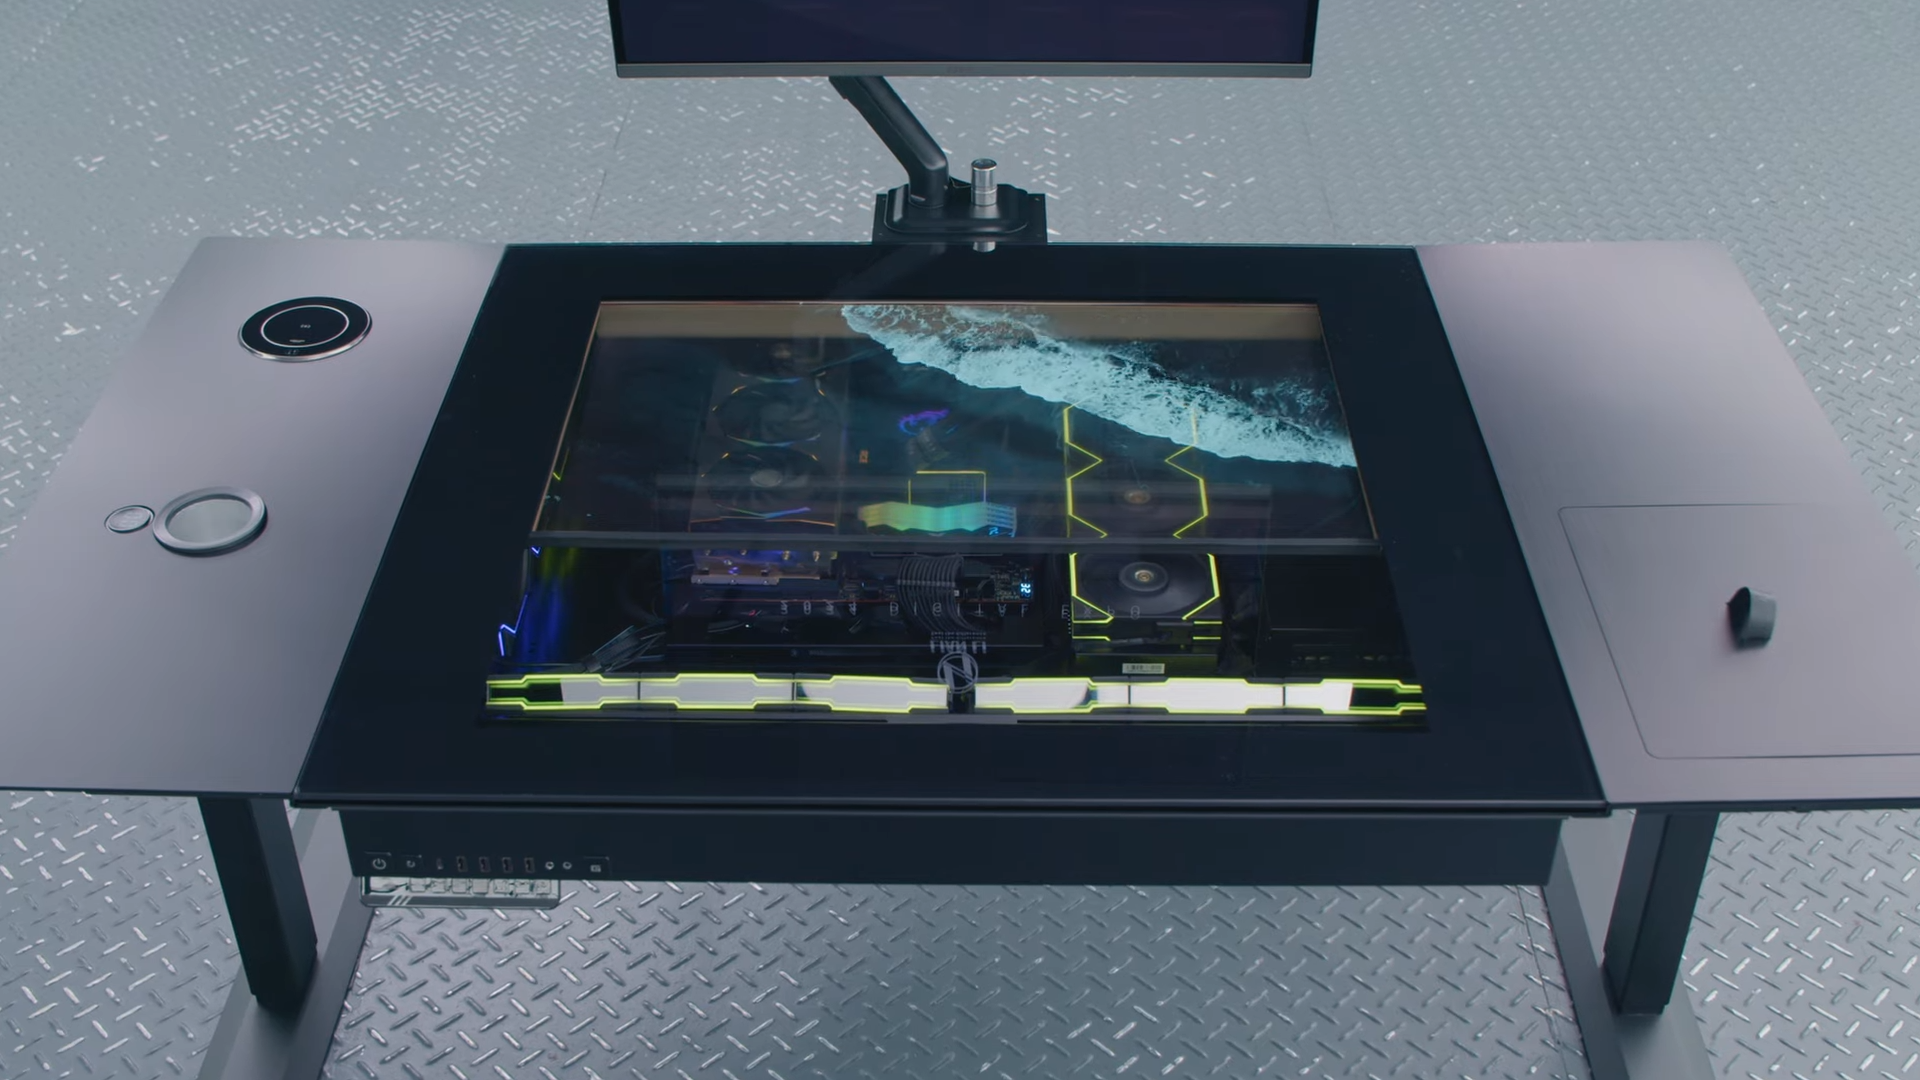 Lian Li a présenté le DK-07 - le boîtier de bureau original pour PC avec un écran OLED transparent intégré.